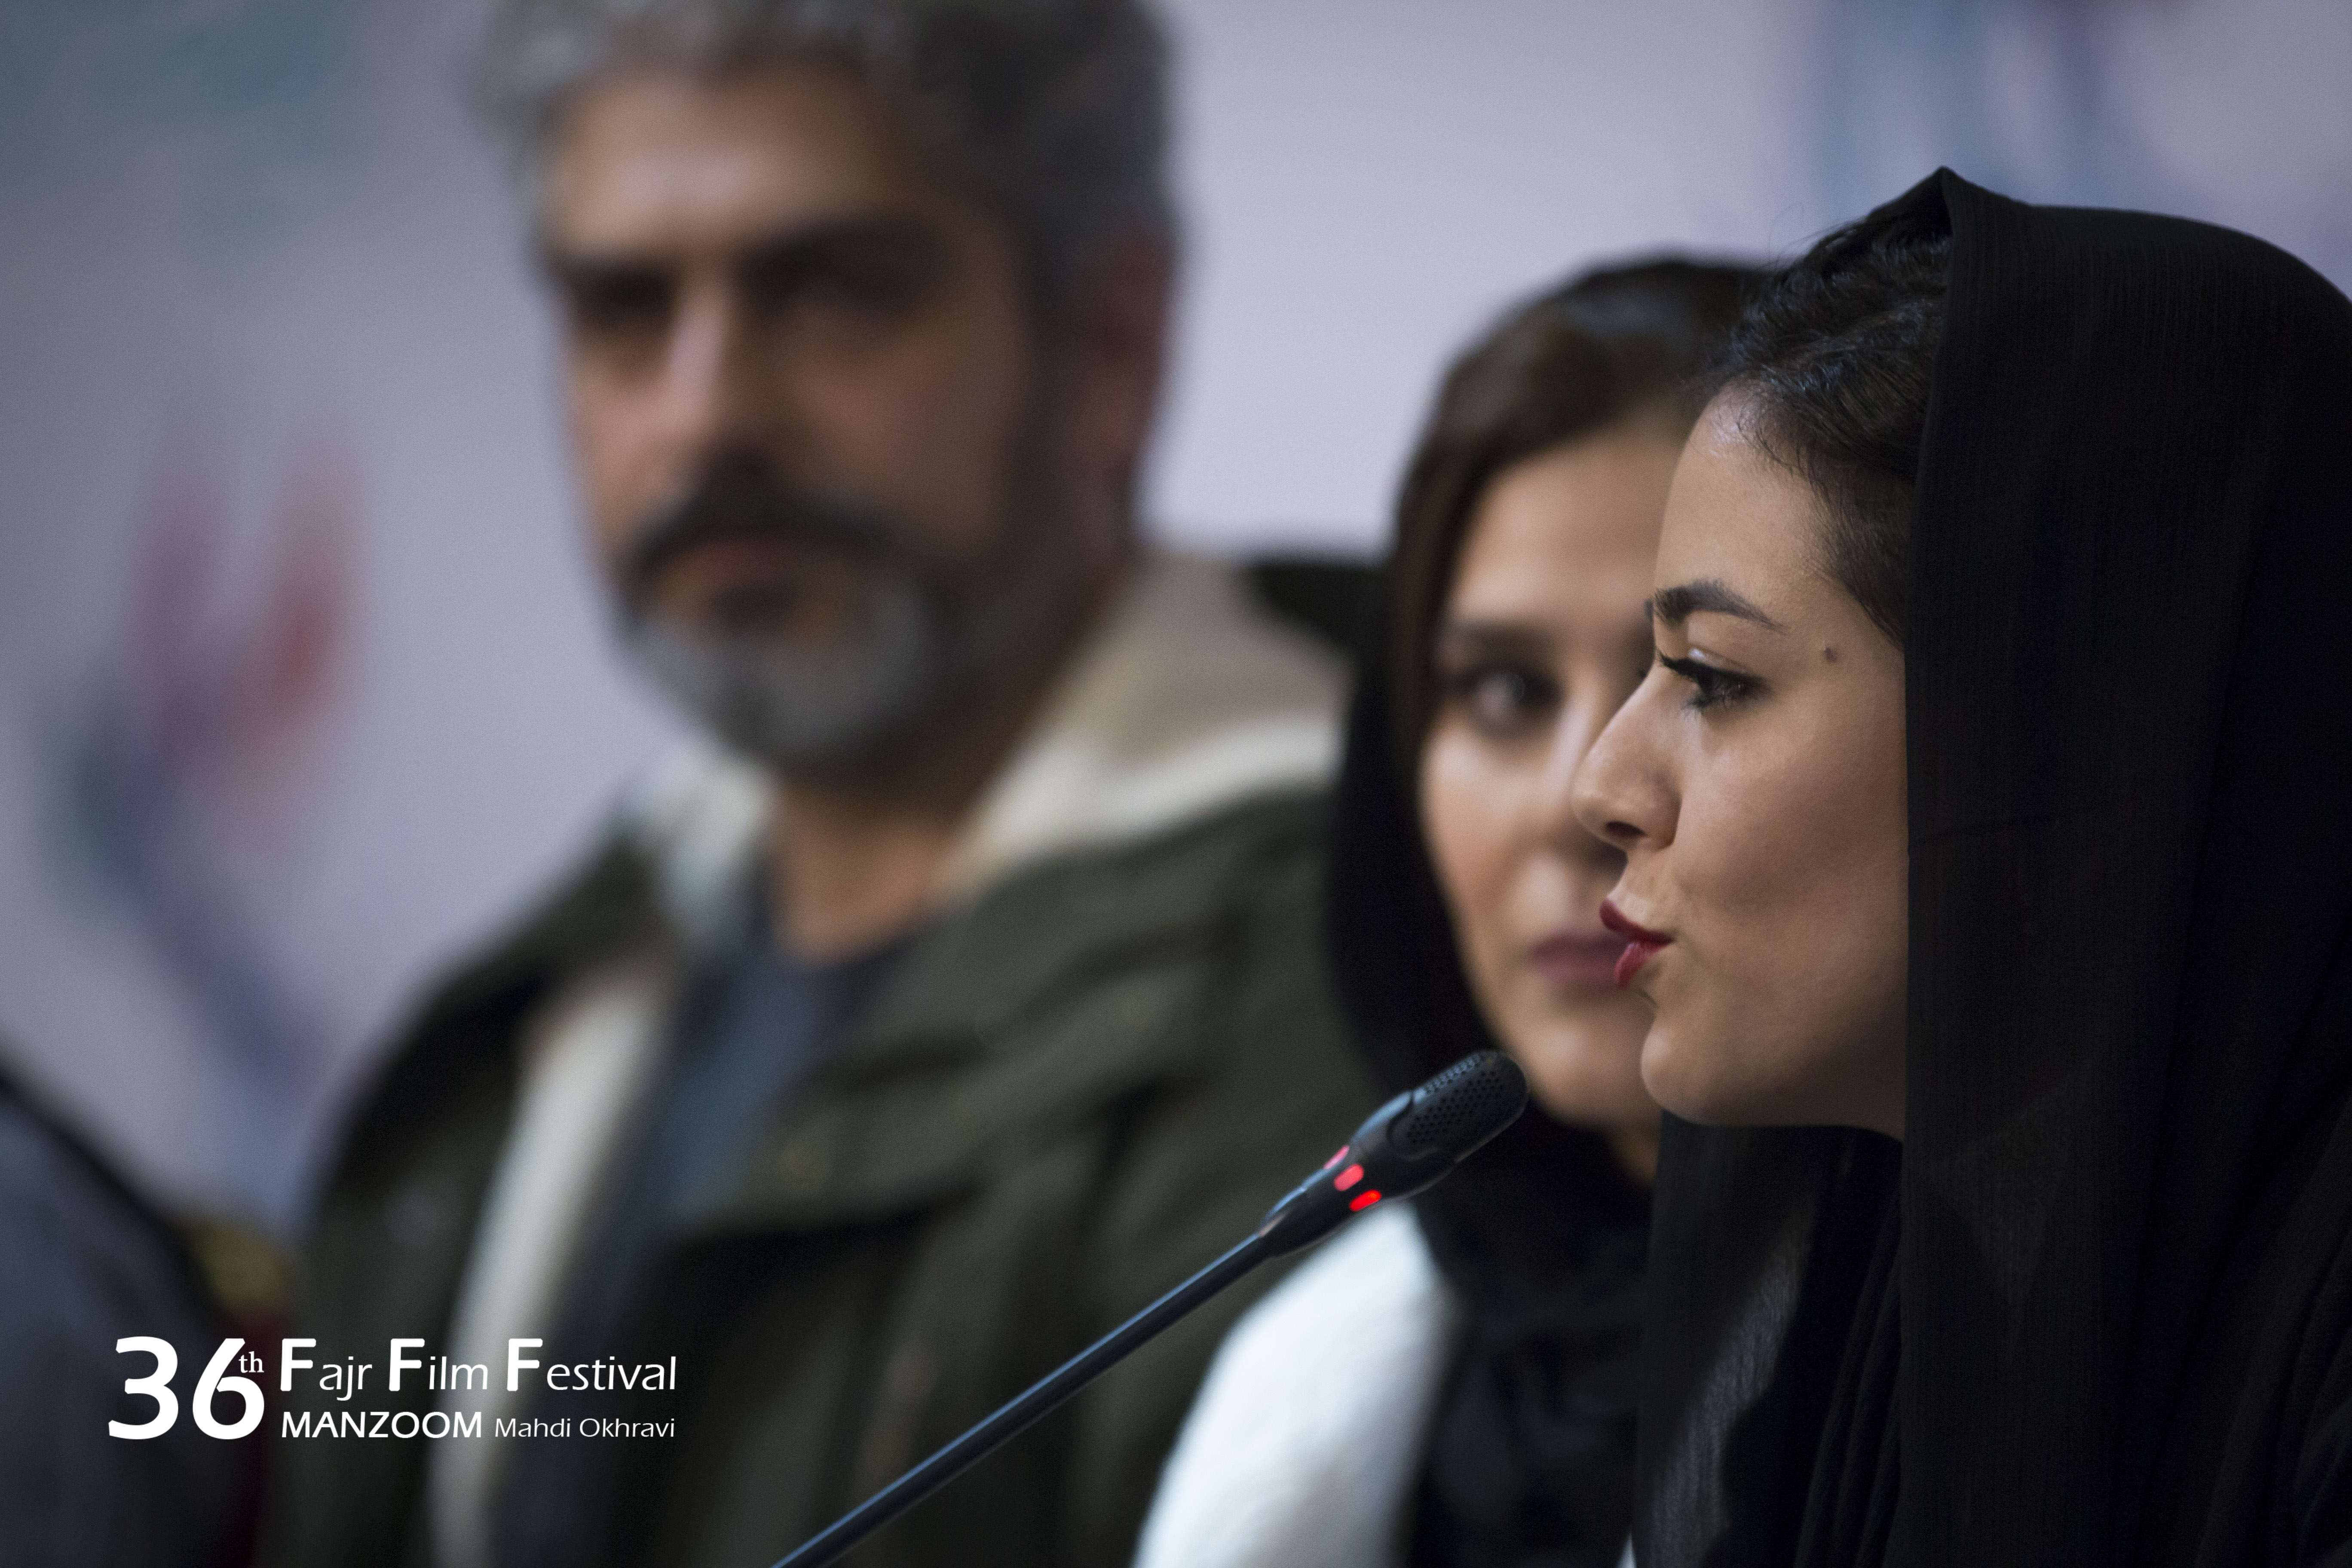 سحر دولتشاهی در نشست خبری فیلم سینمایی چهارراه استانبول به همراه ماهور الوند